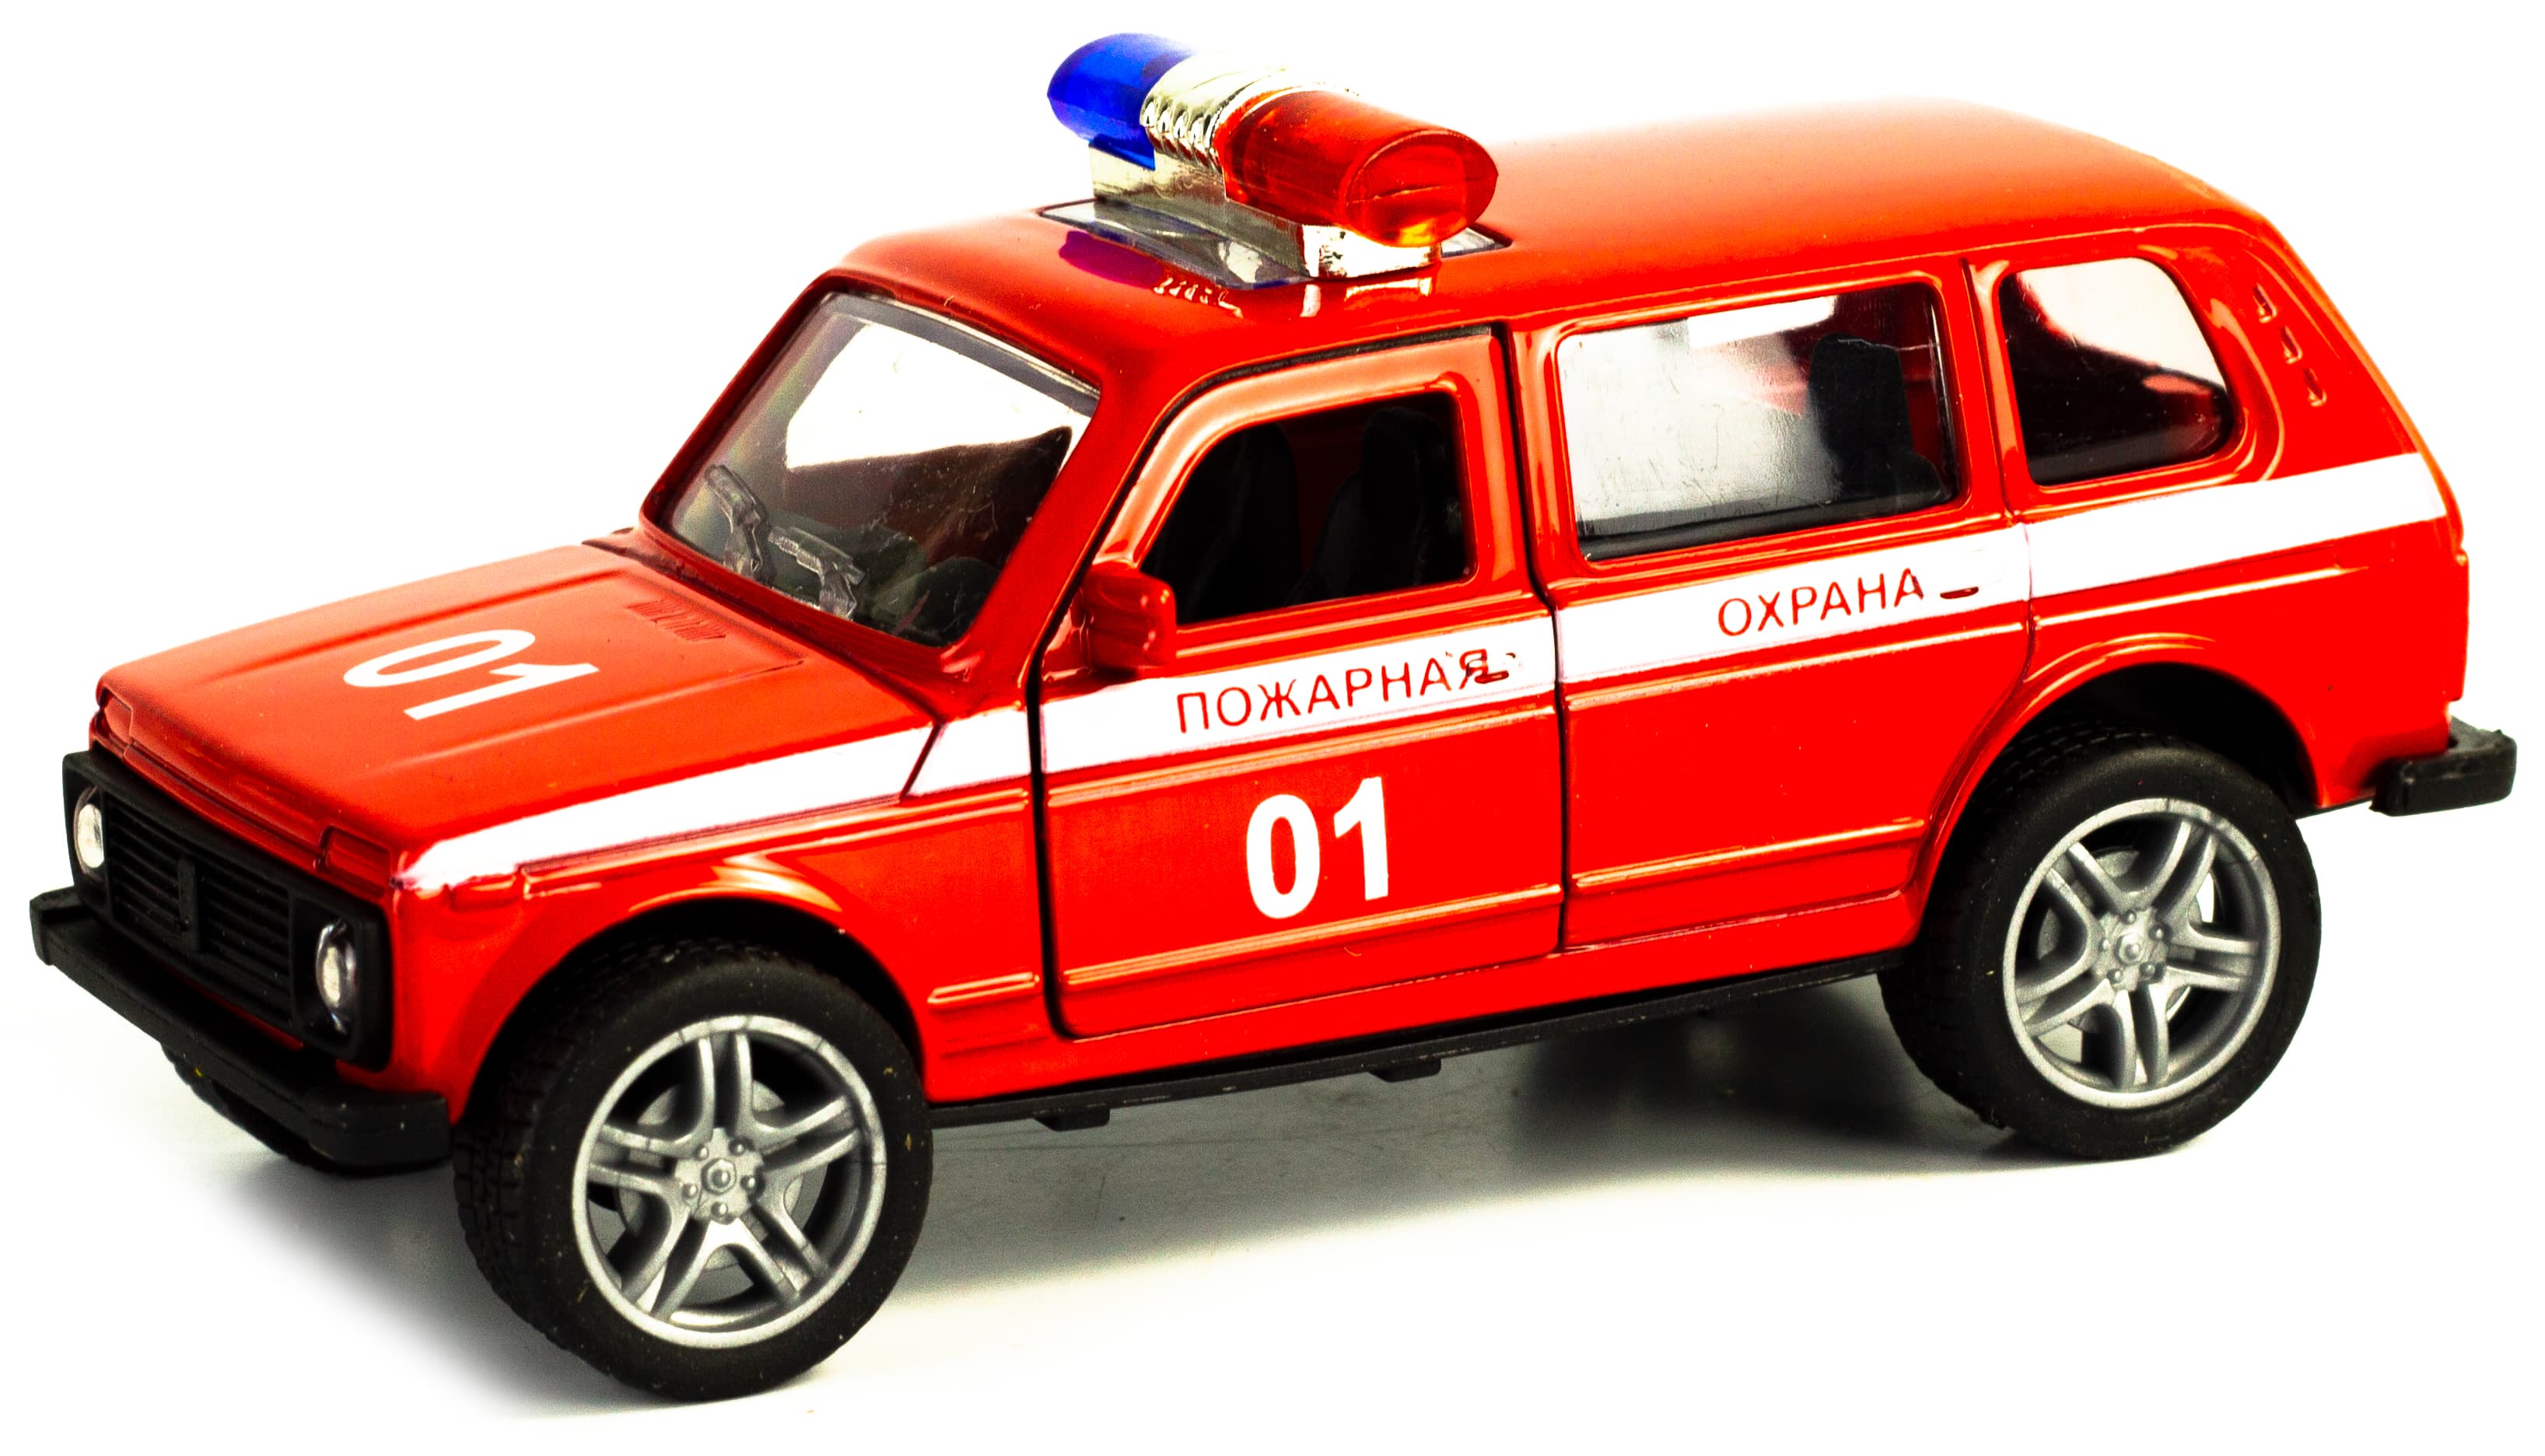 Металлическая машинка Tian Du 1:32 «Нива: Пожарная охрана» F1132-4, 11,2 см., инерционная / Красный